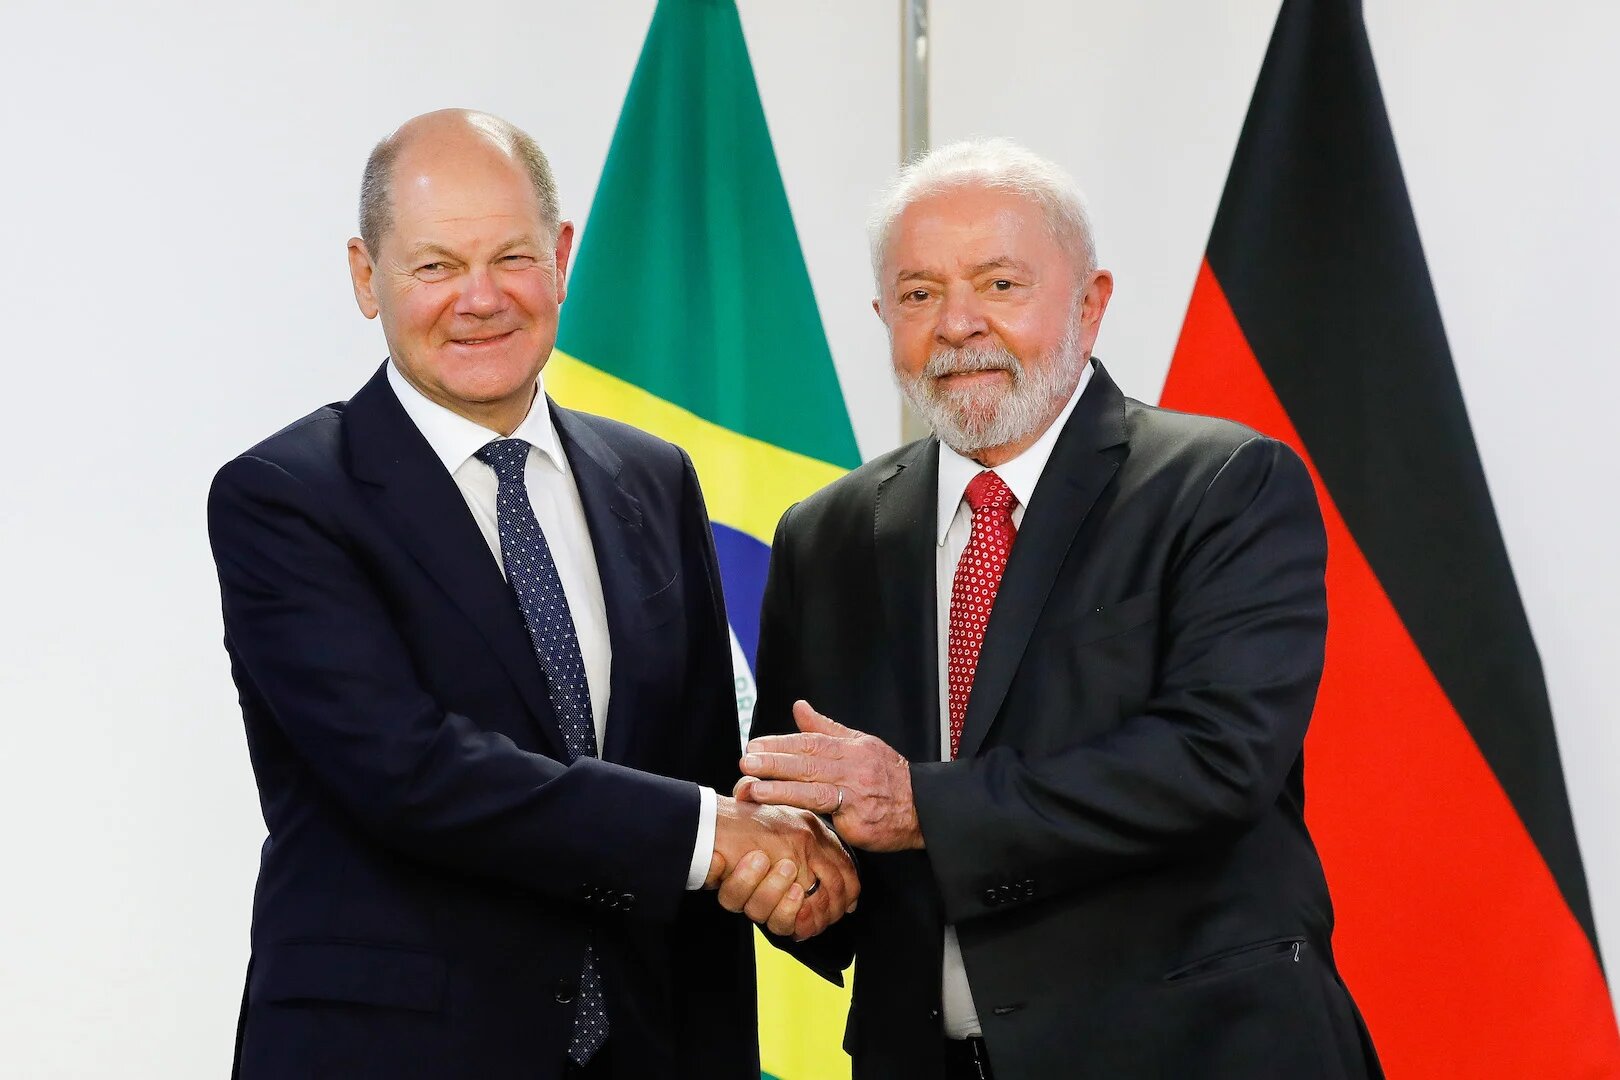 O Brasil e a Alemanha estão estreitando os laços para fortes investimentos em projetos voltados para a descarbonização do setor da energia. O Governo Lula pretende unir forças com o país para expandir a economia do hidrogênio verde em ambos os países.